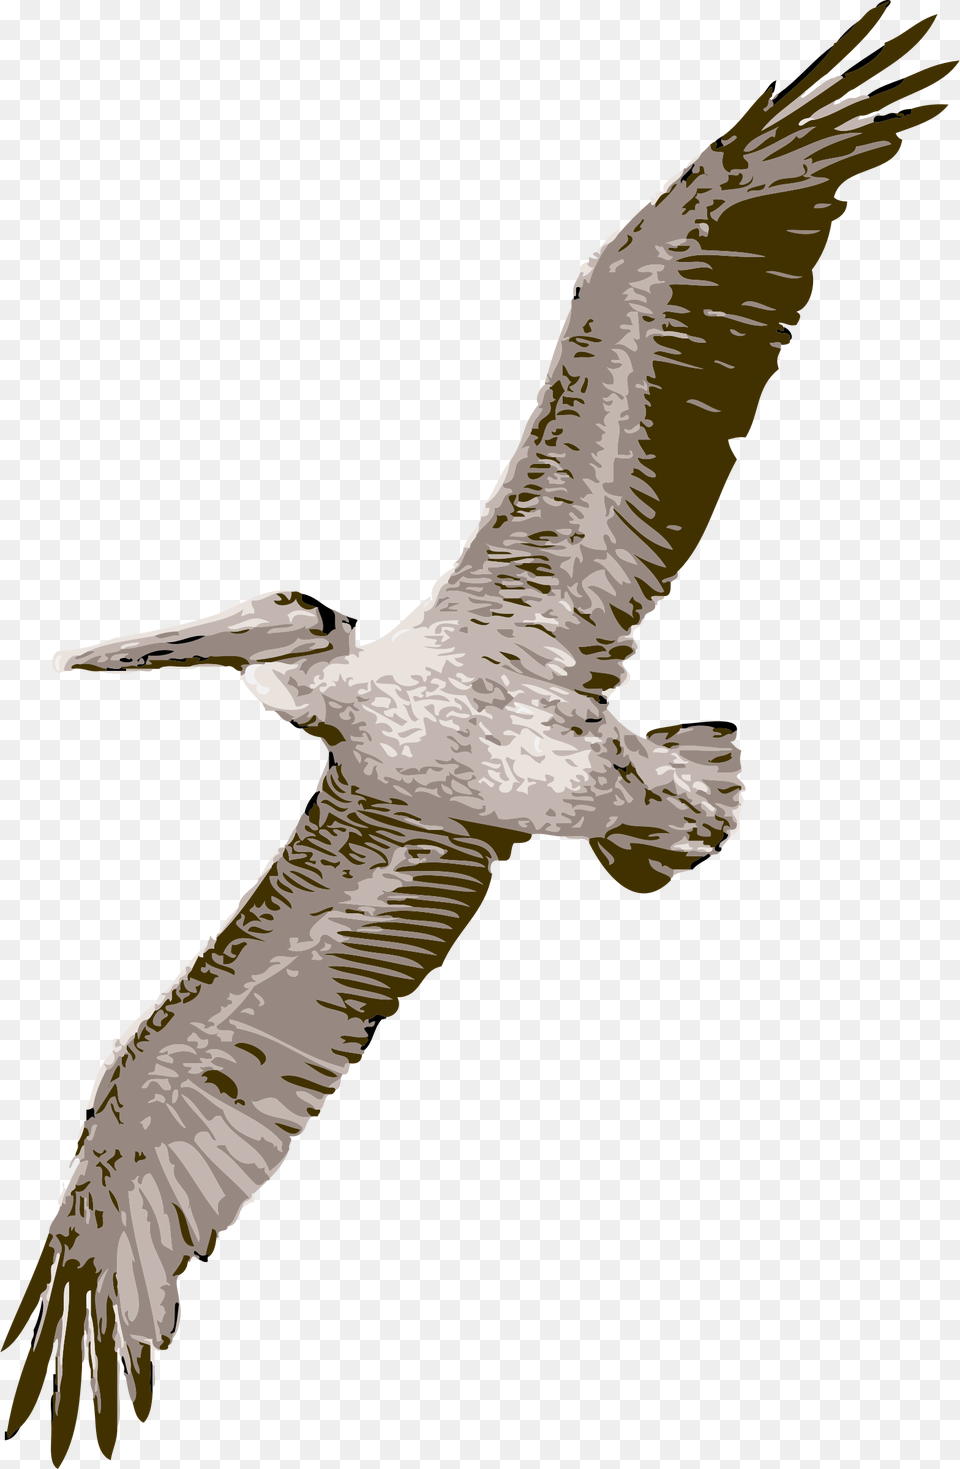 Bird Flying Wings Pelican Feathers Soaring Fly Pelican, Animal, Waterfowl, Beak Png Image